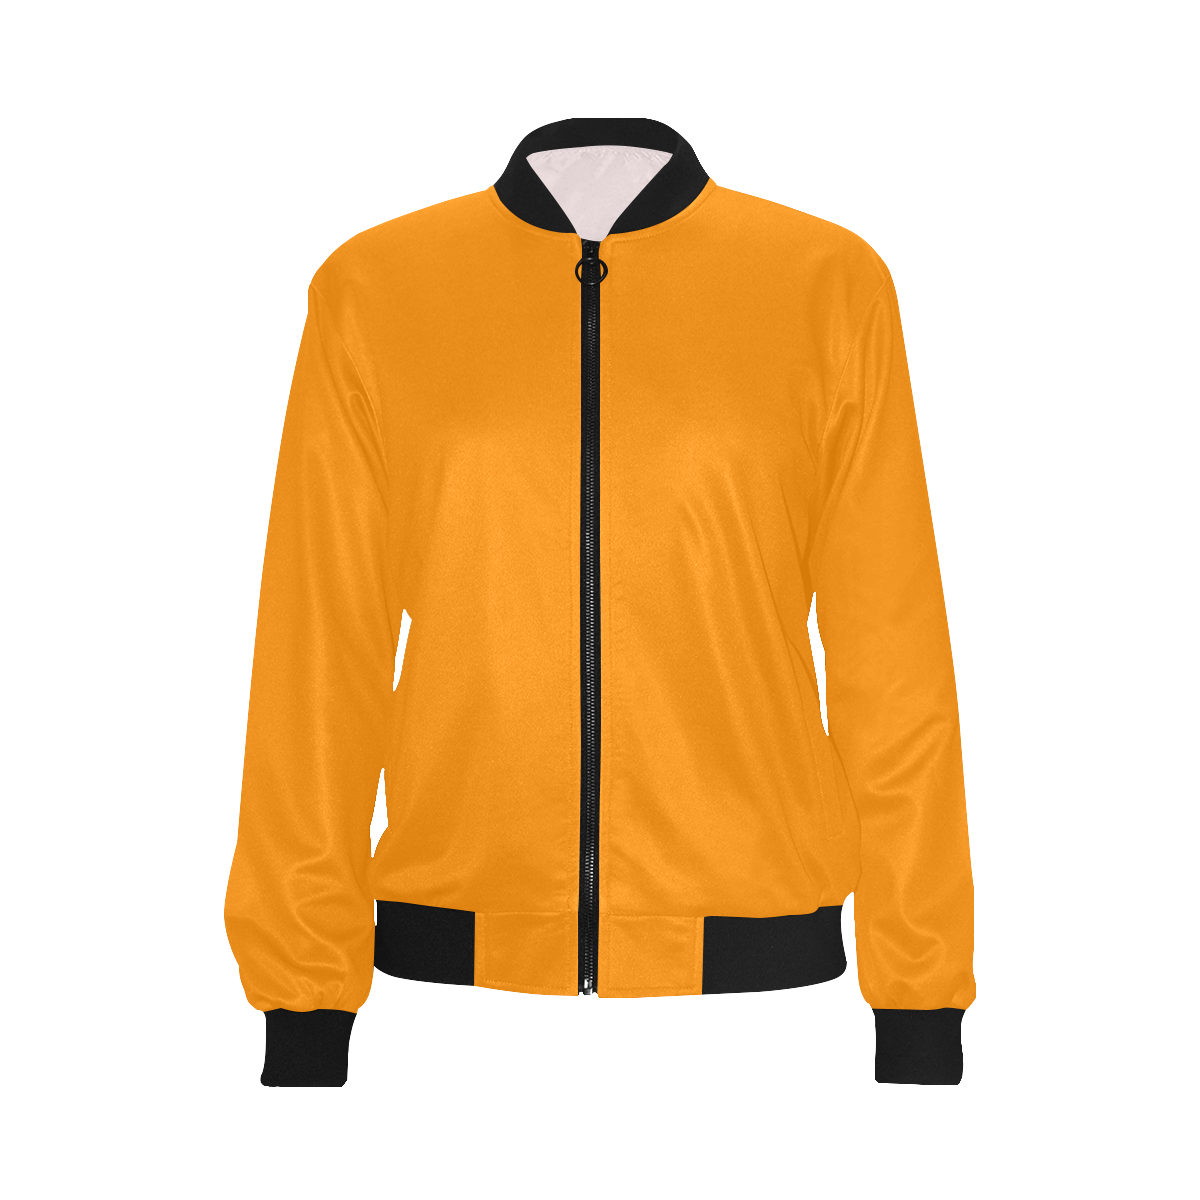 color dark orange All Over Print Bomber Jacket for Women (Model H36)